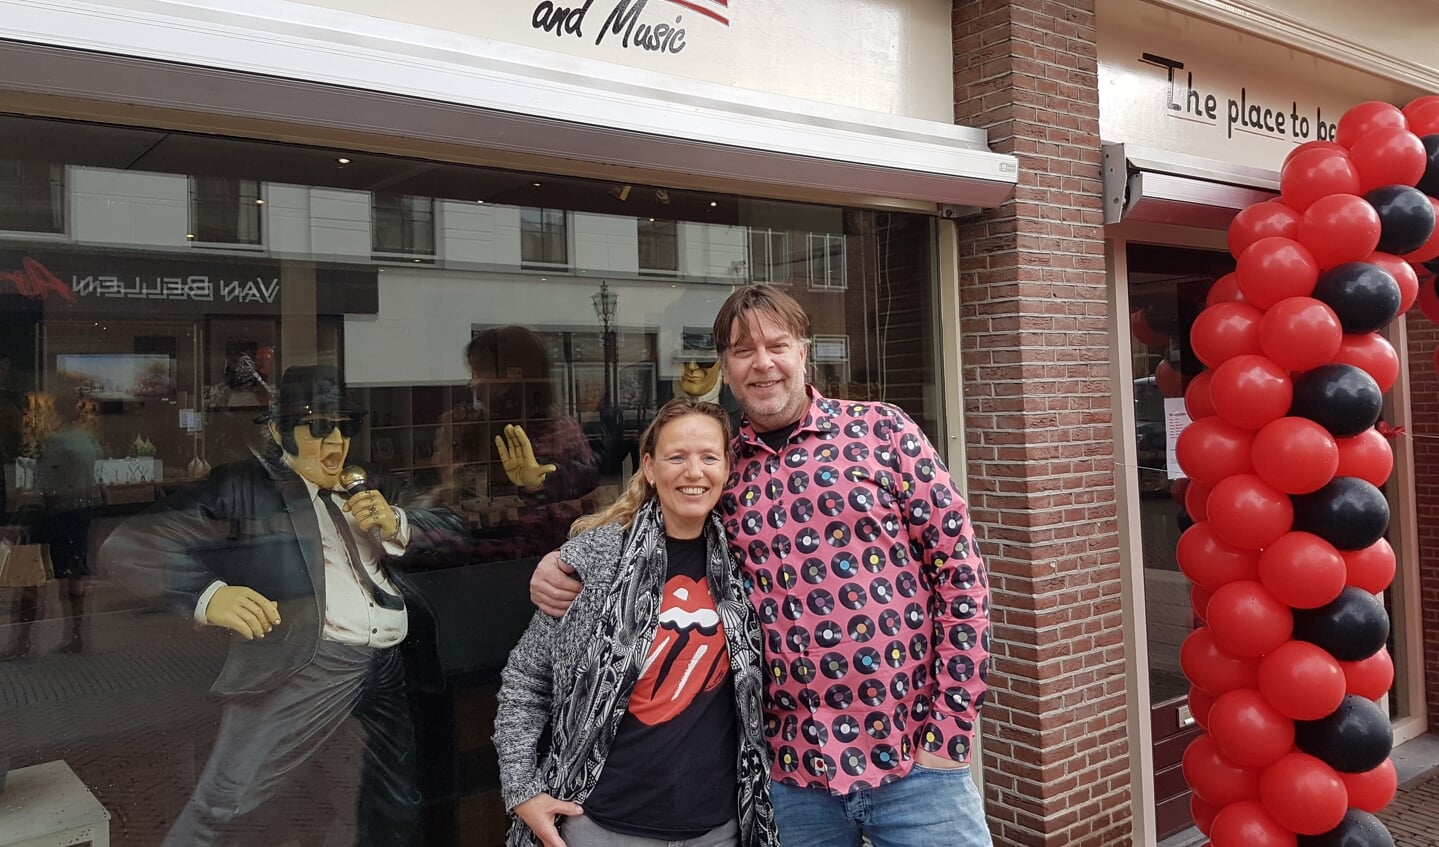 Chris en Jacqueline openden afgelopen vrijdag de deuren van hun nieuwe winkel, ‘Memories and Music’